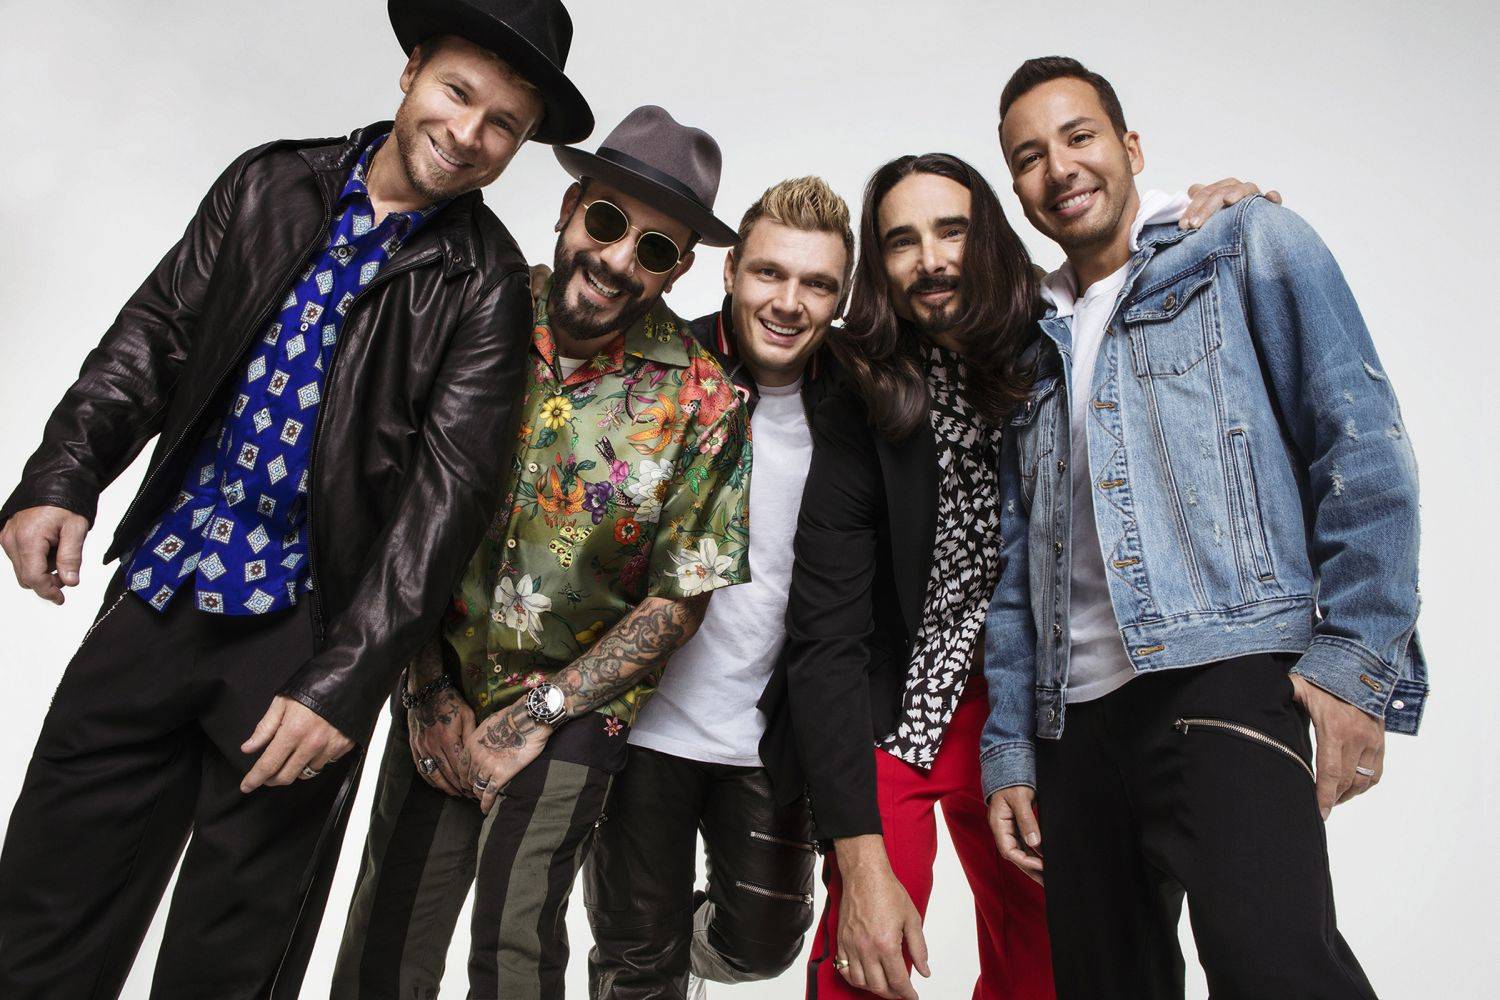 Backstreet Boys vyrážejí s novým albem do hal, v Praze zahrají v červnu